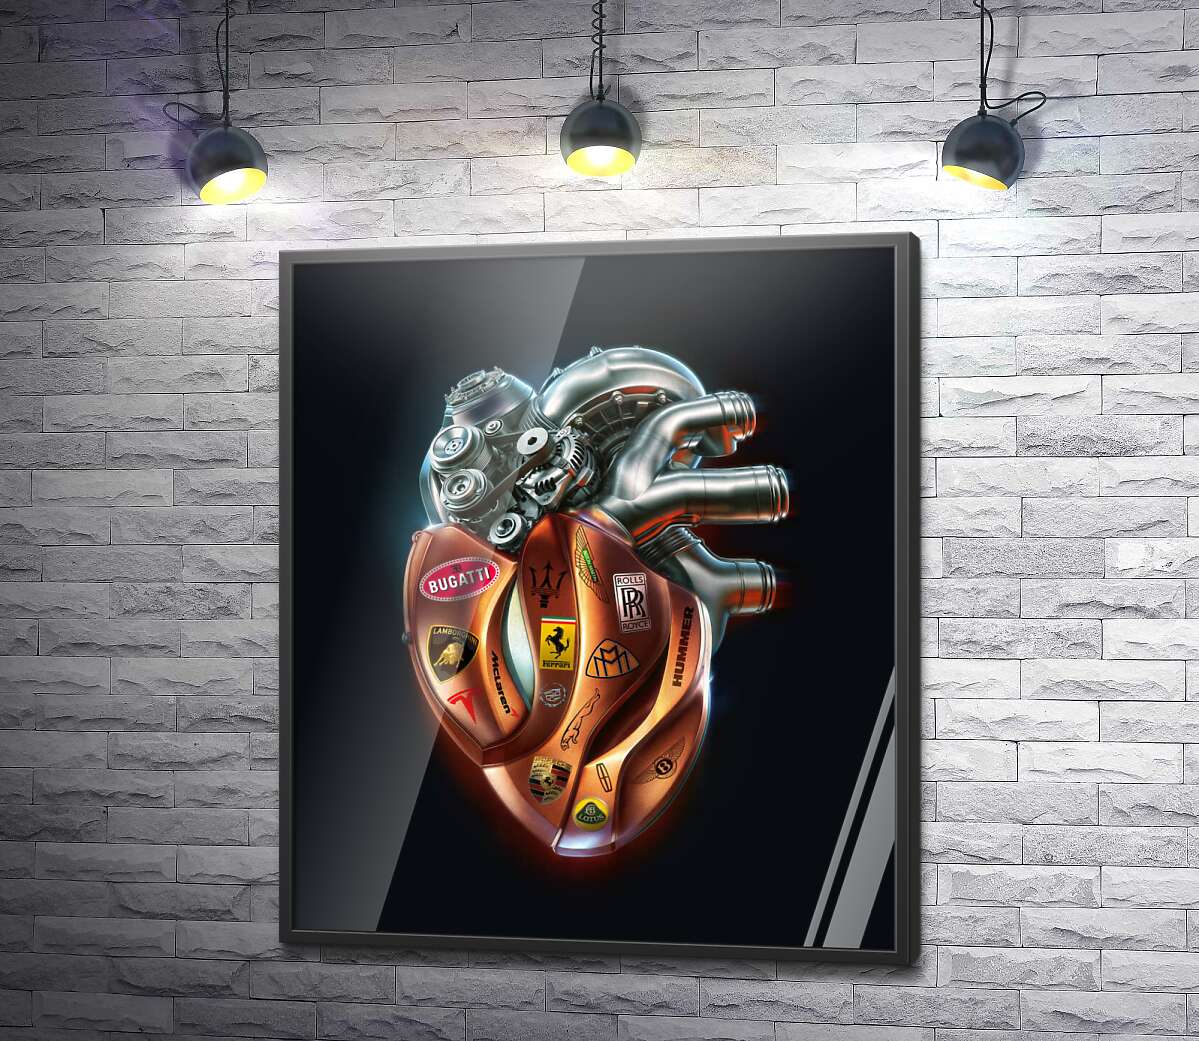 постер Серце-мотор з наклейками брендів люксових авто